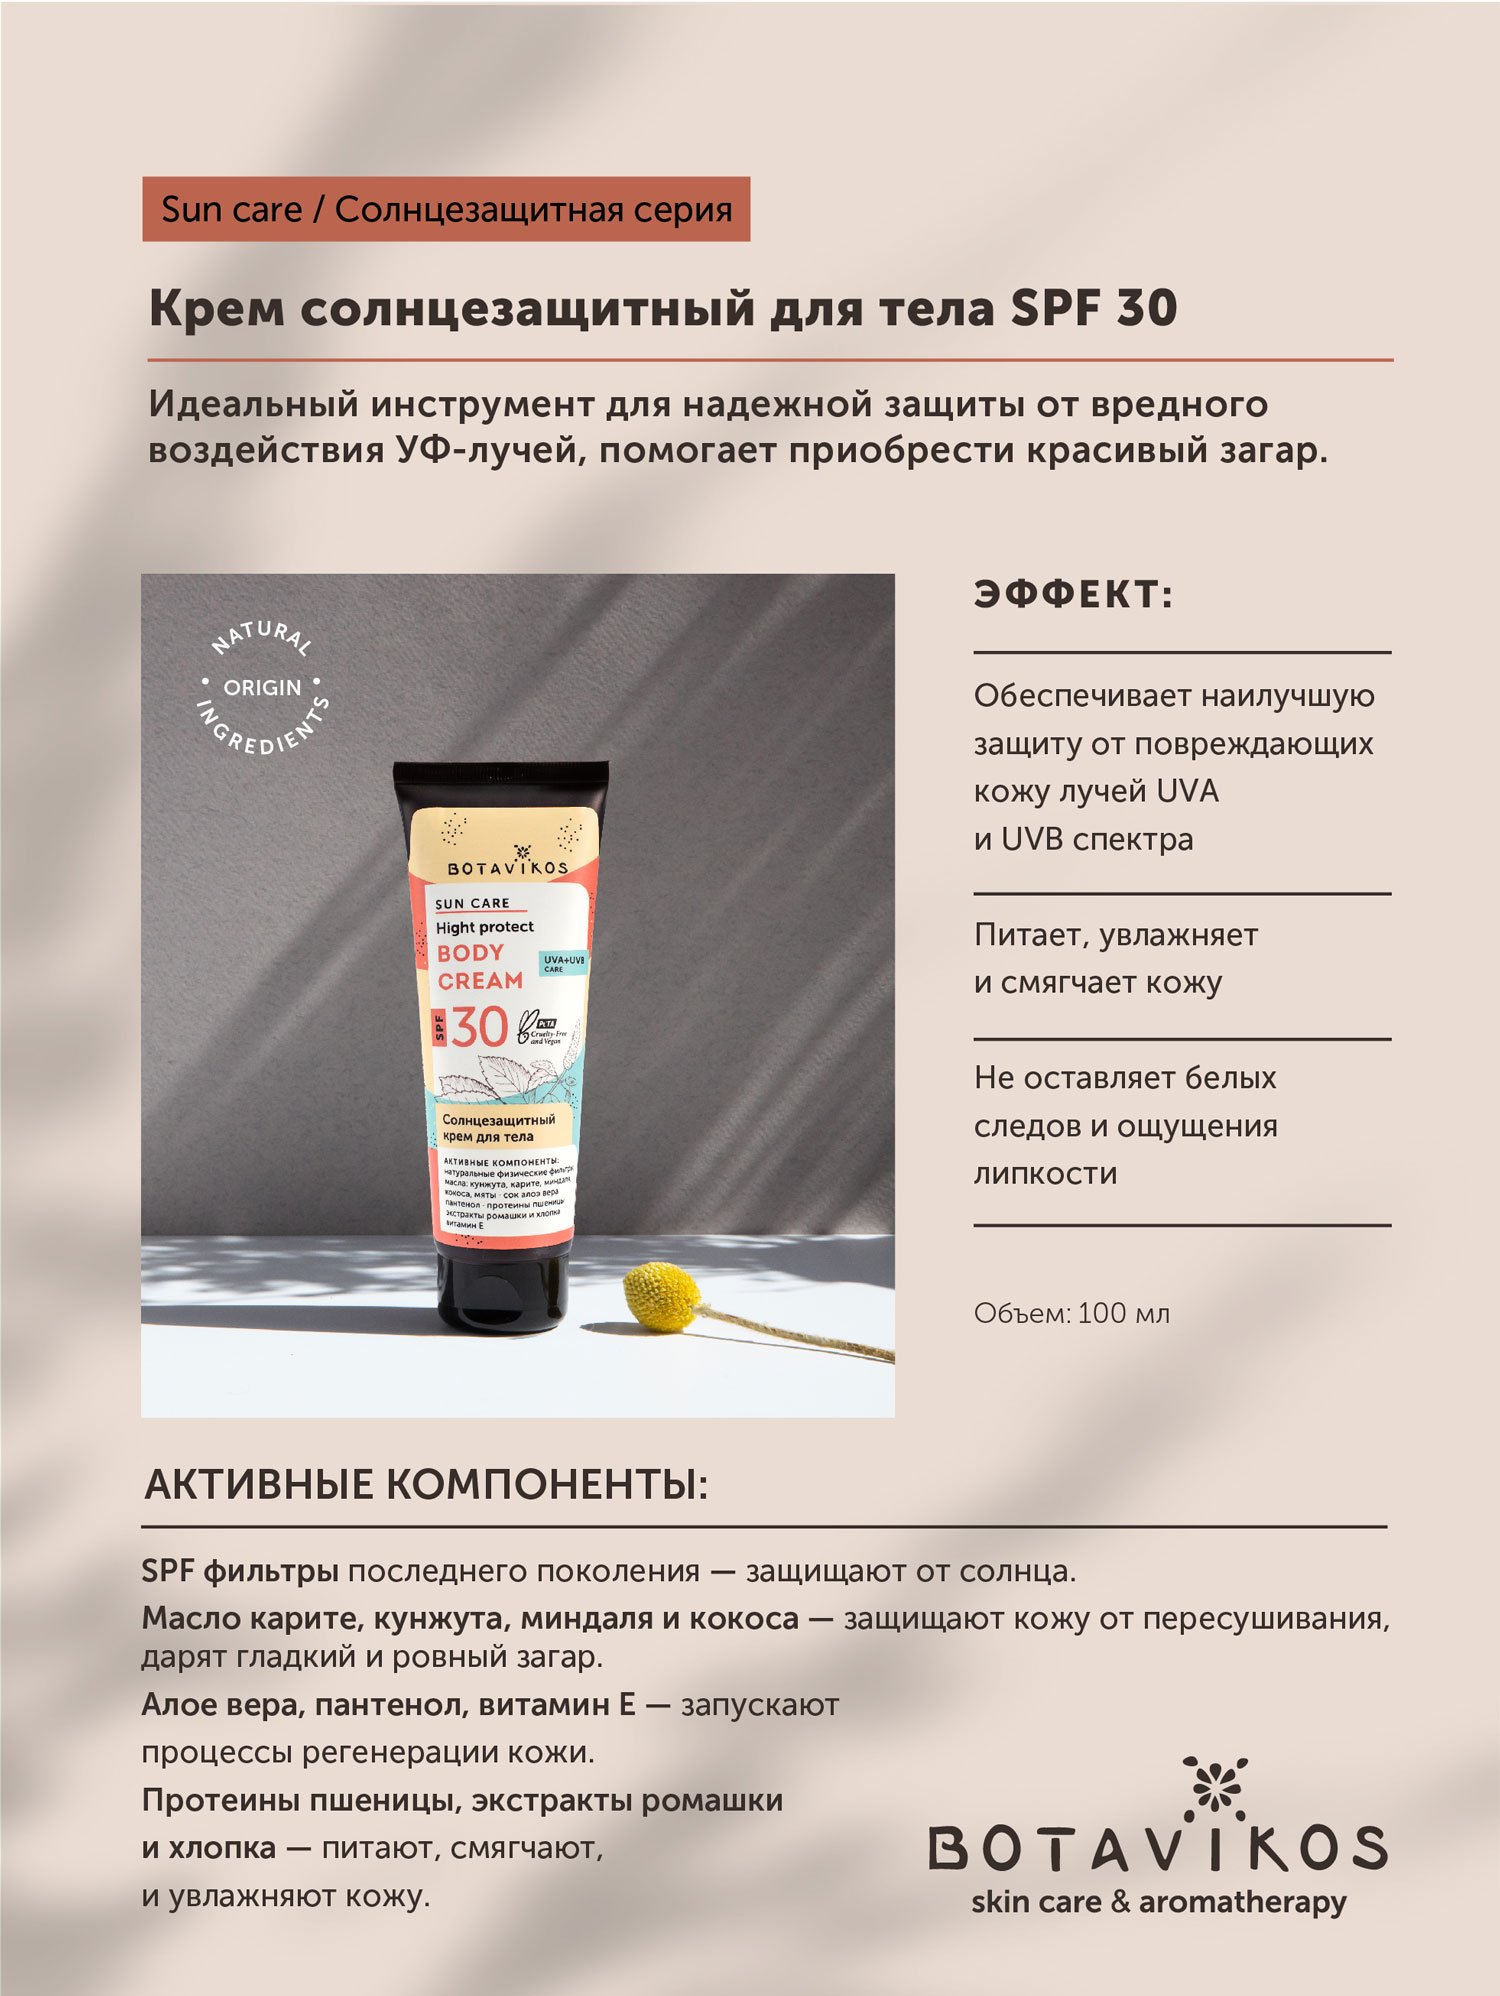 Солнцезащитный крем для тела SPF 30 Botavikos, 100мл купить в онлайн экомаркете